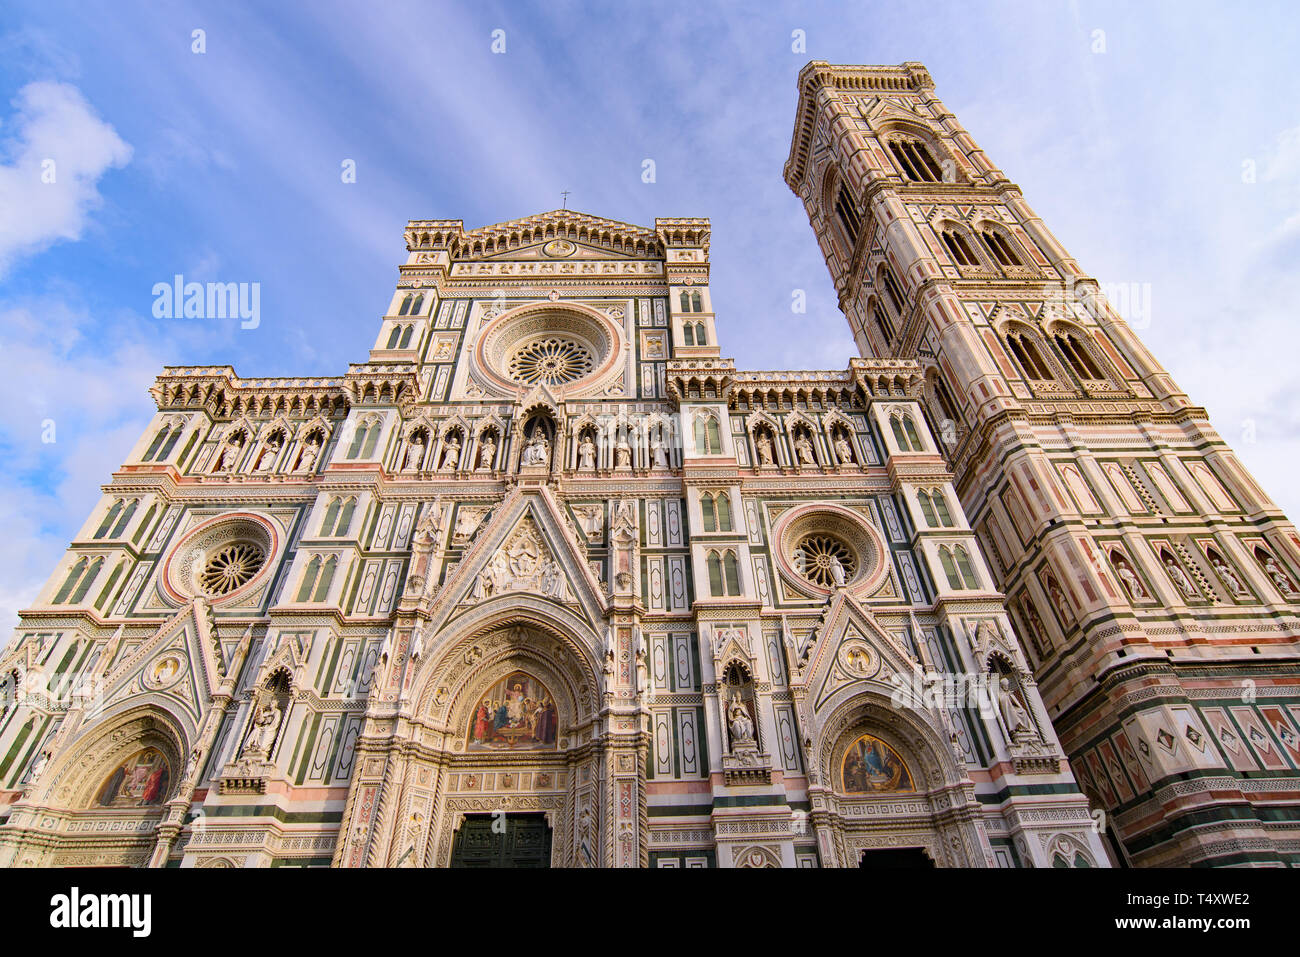 Cathédrale de Sainte Marie de la fleur (Duomo di Firenze) et le campanile de Giotto à Florence , Italie Banque D'Images